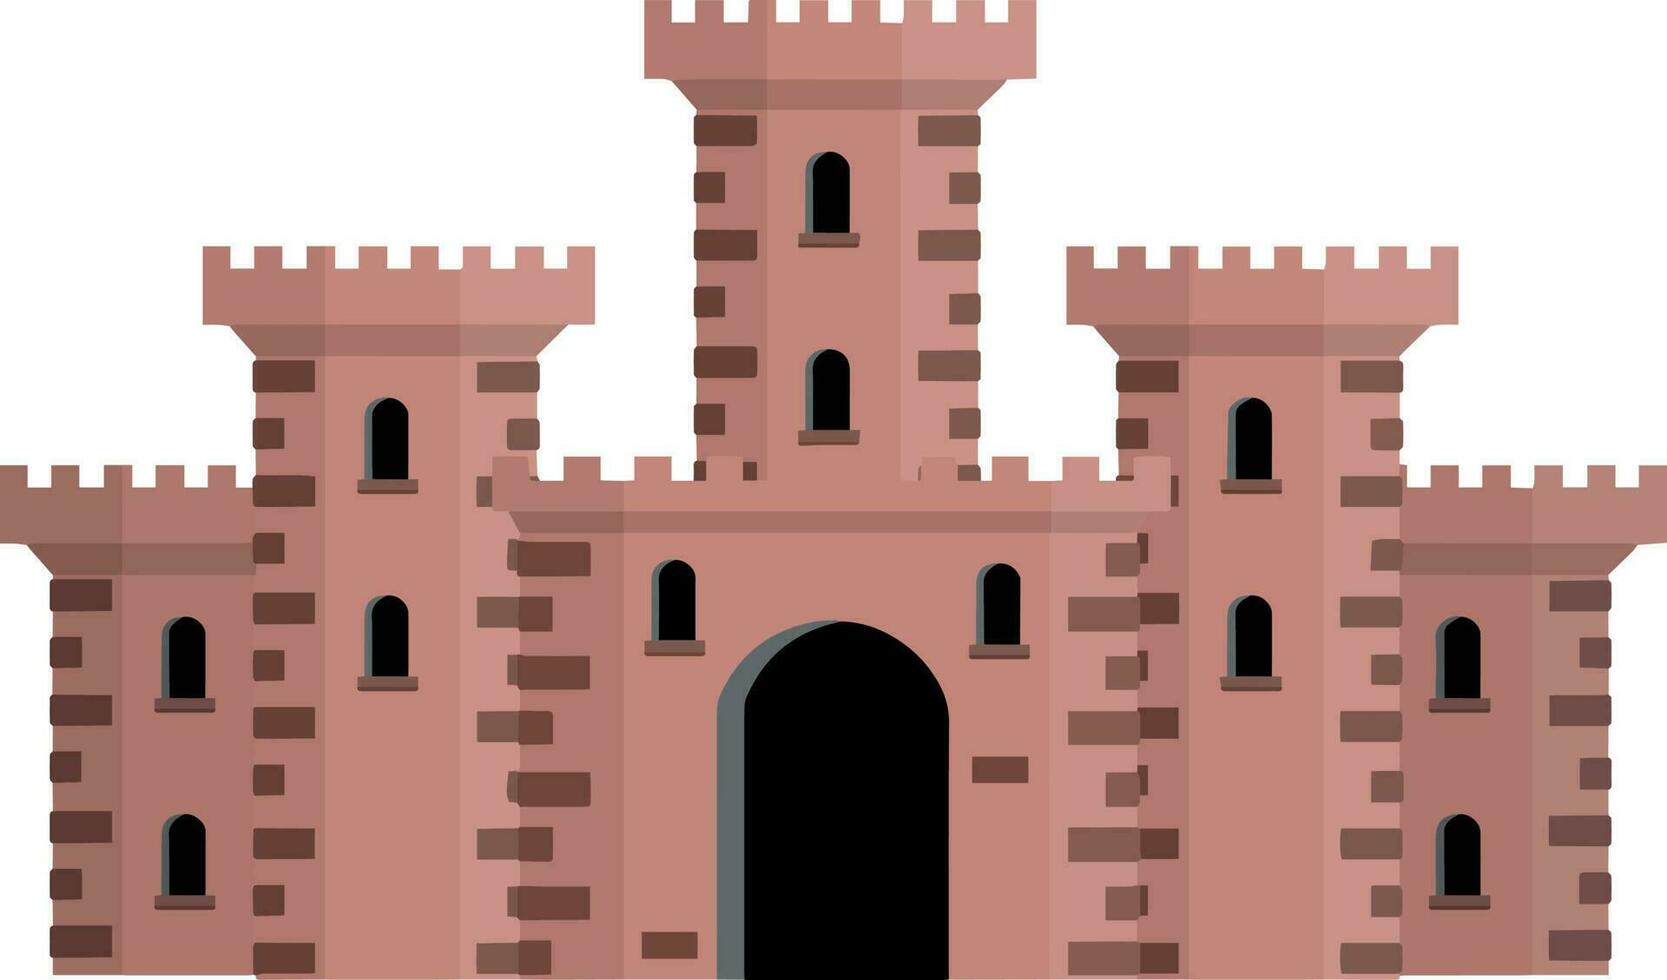 medeltida europeisk sten slott. riddare fästning. begrepp av säkerhet, skydd och försvar. tecknad serie platt illustration. militär byggnad med väggar, grindar och stor torn. vektor